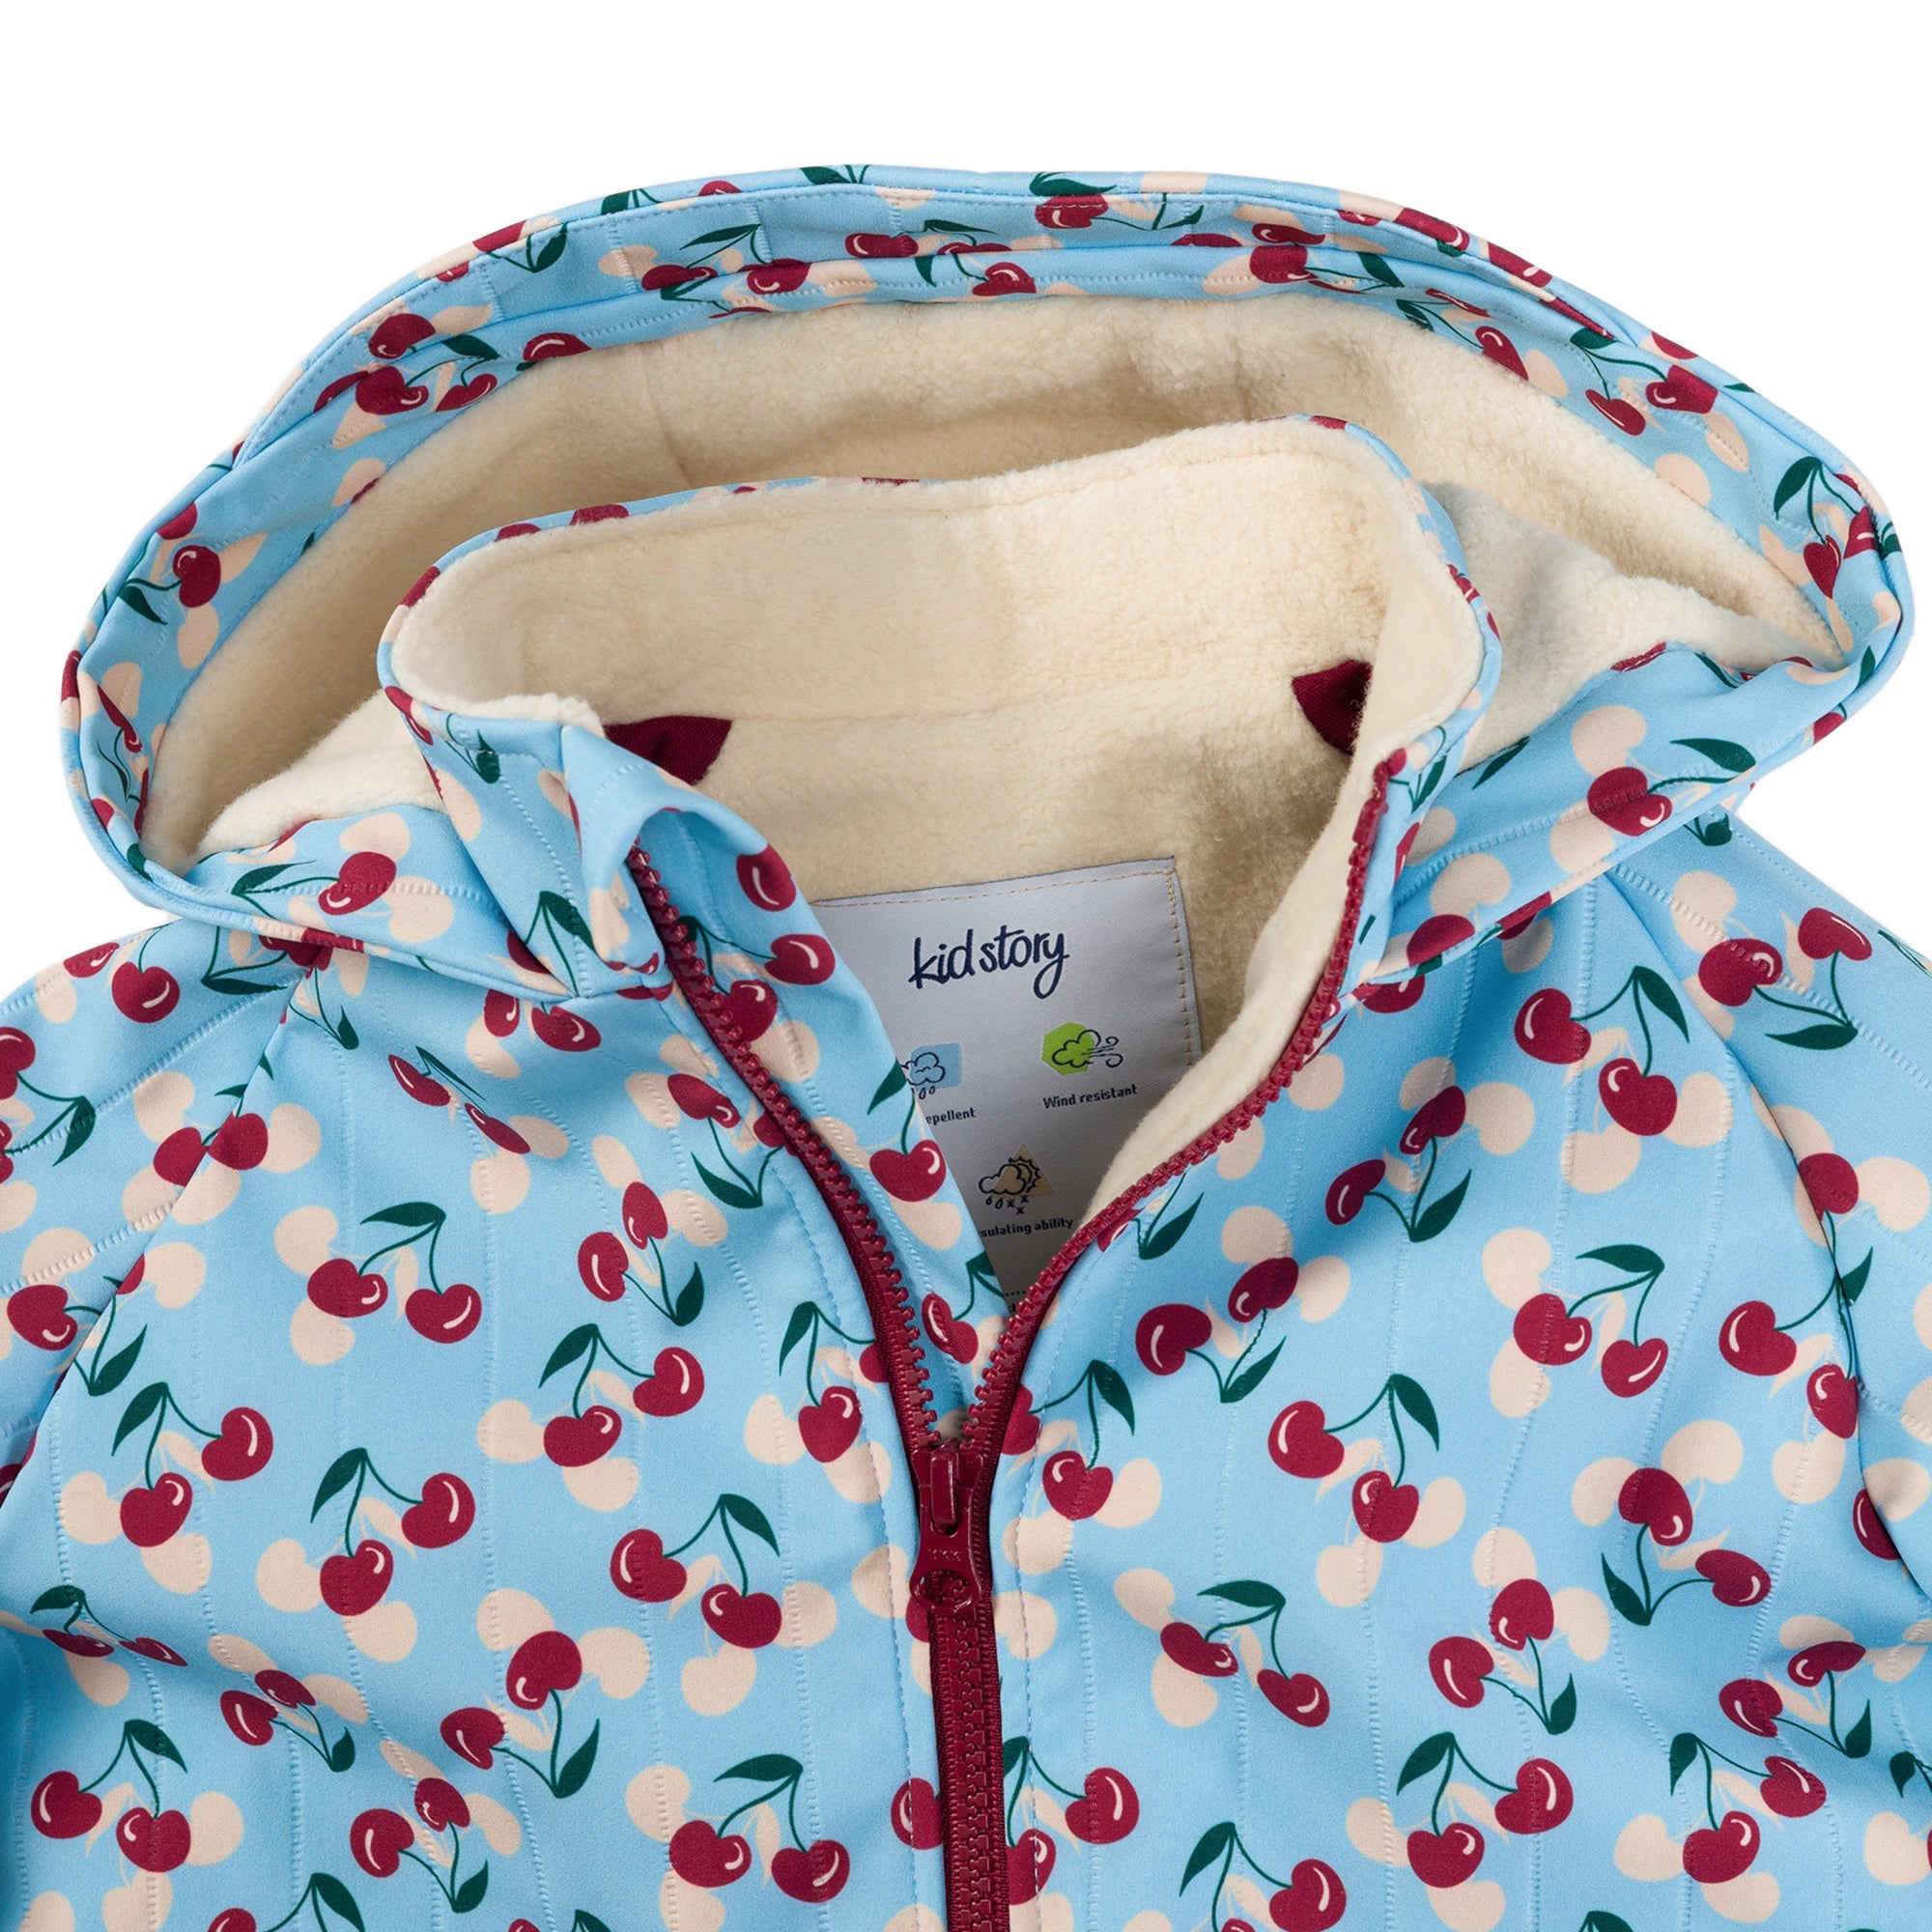 Історія малюка: космічна вишнева термальна куртка